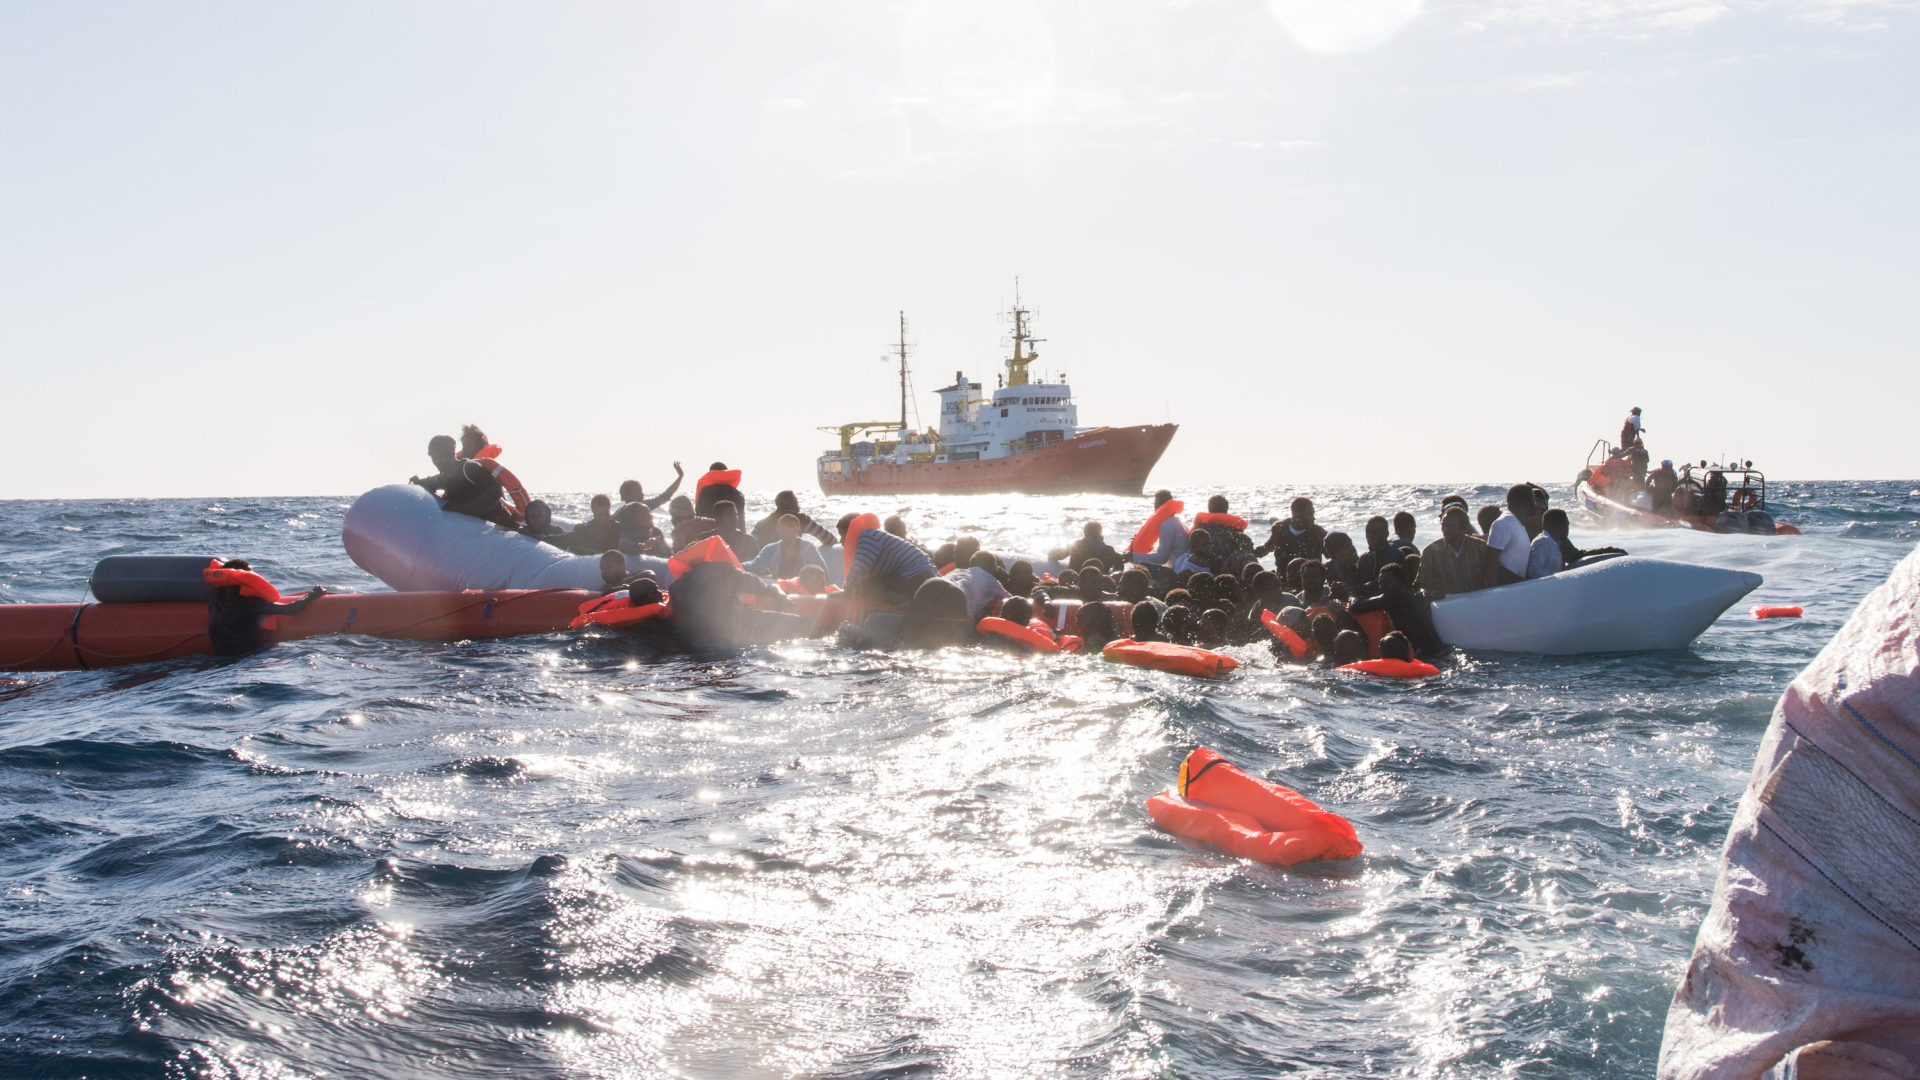 Noch immer versuchen Menschen täglich über das Mittelmeer nach Europa zu gelangen. Hier werden Schiffbrüchige vor der libyschen Küste geborgen. | dpa